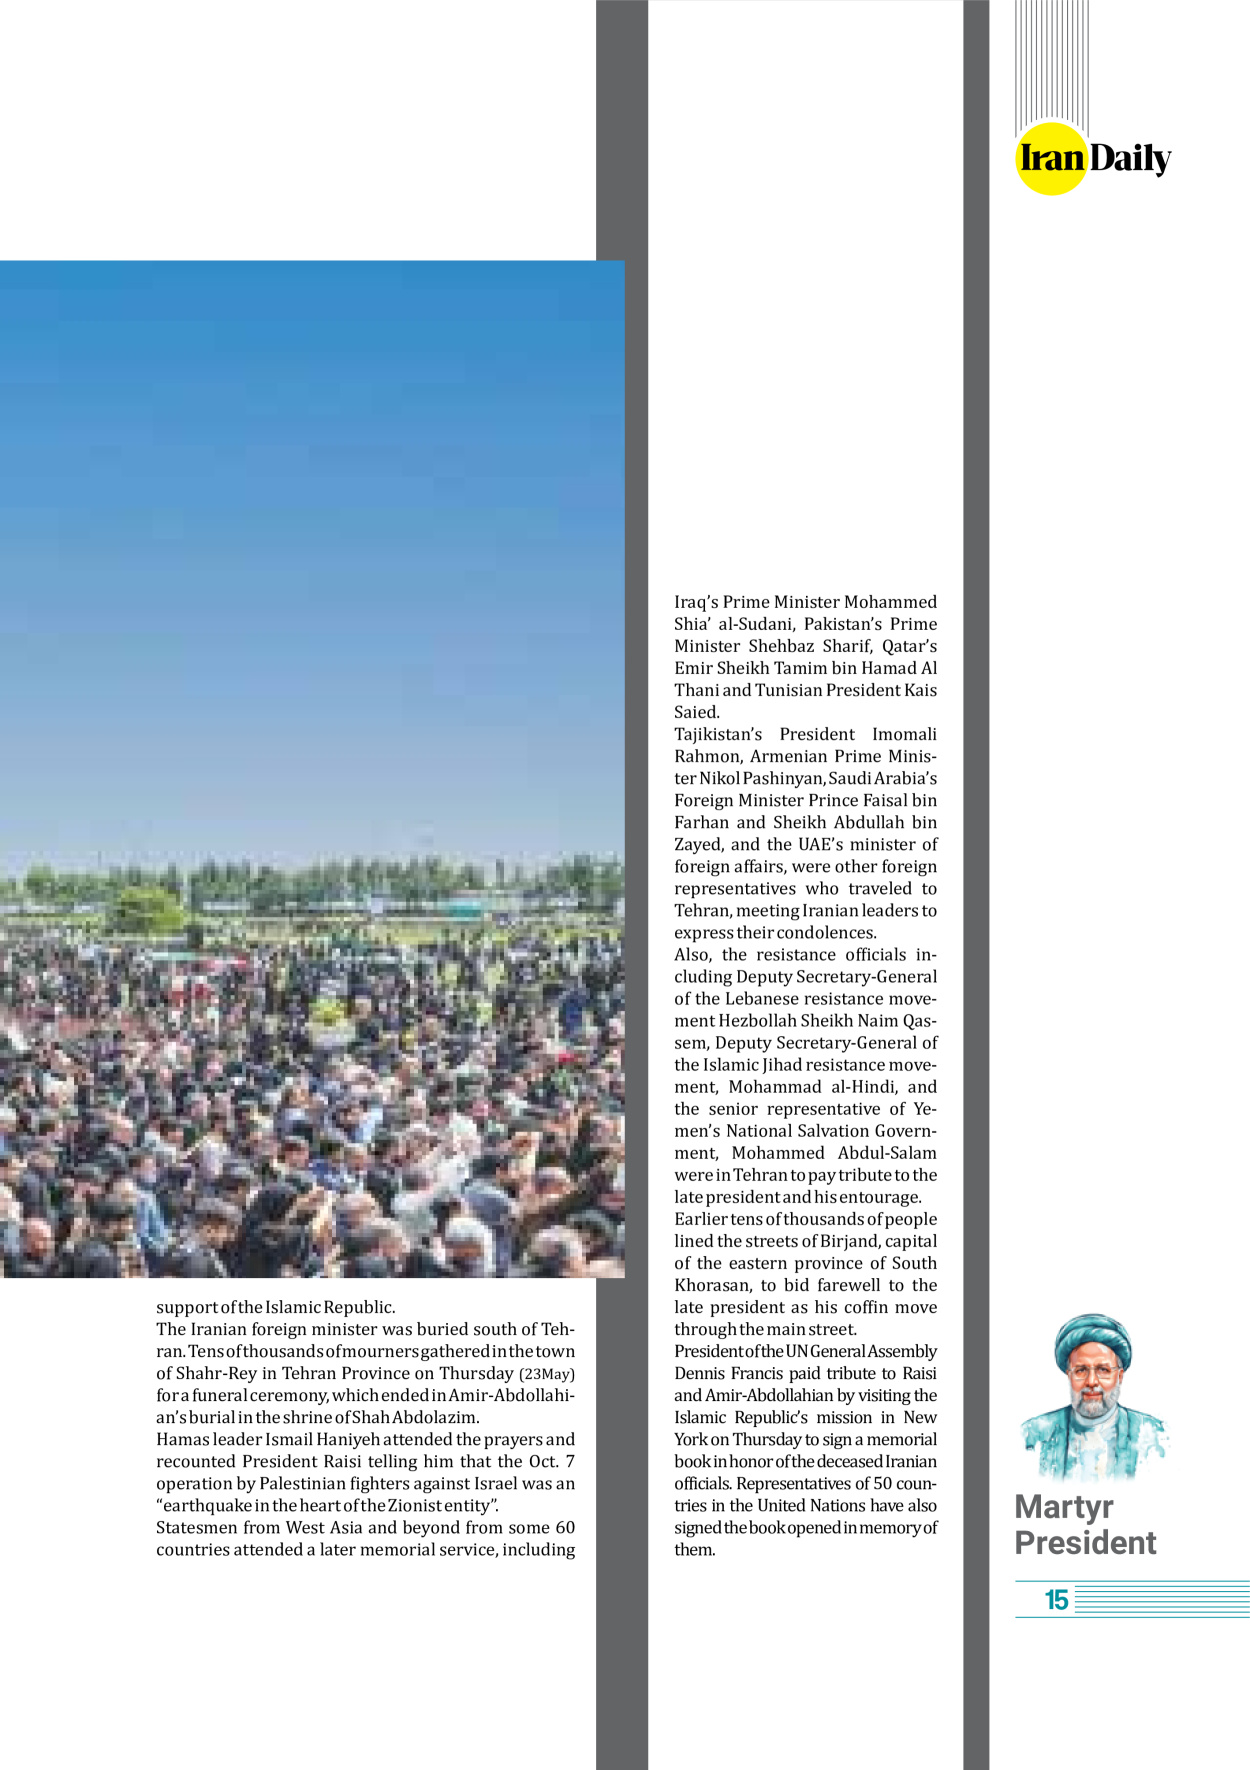 روزنامه ایران - ویژه نامه وِزه نامه چهلم شهید رییسی( انگلیسی) - ۱۷ تیر ۱۴۰۳ - صفحه ۱۵